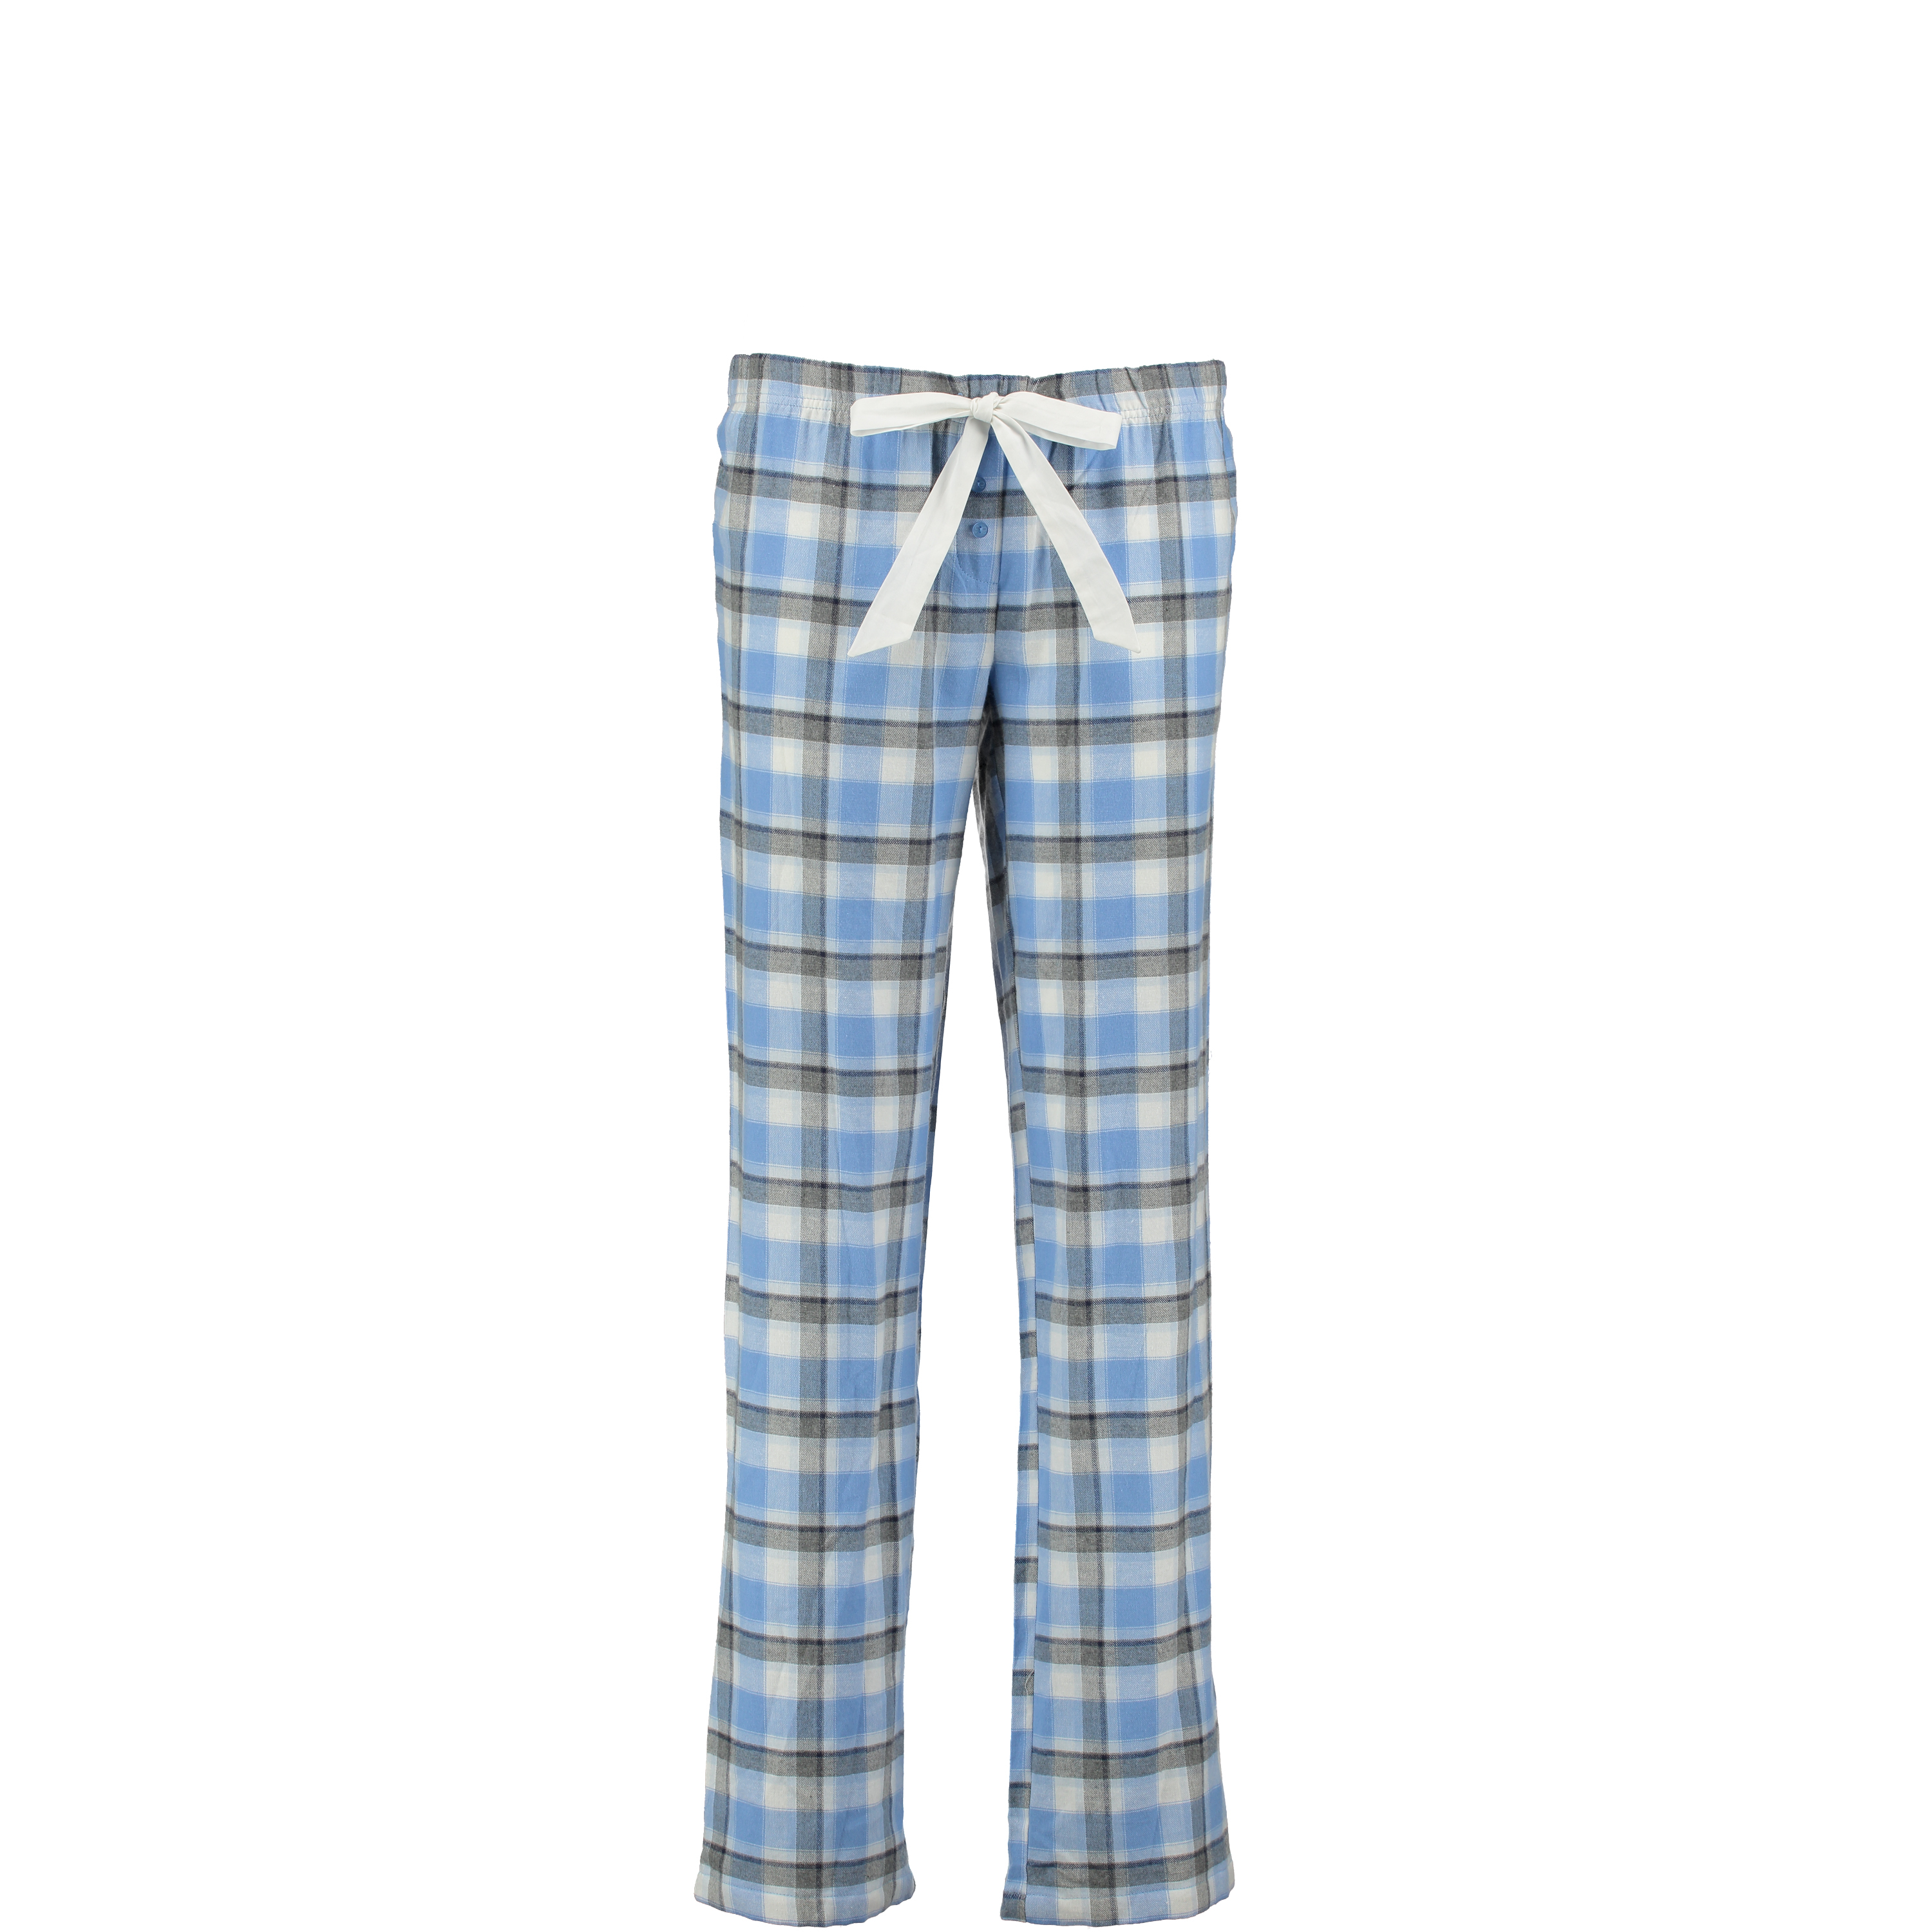 Pyjama pants Papillon butterfly, Bleu, main